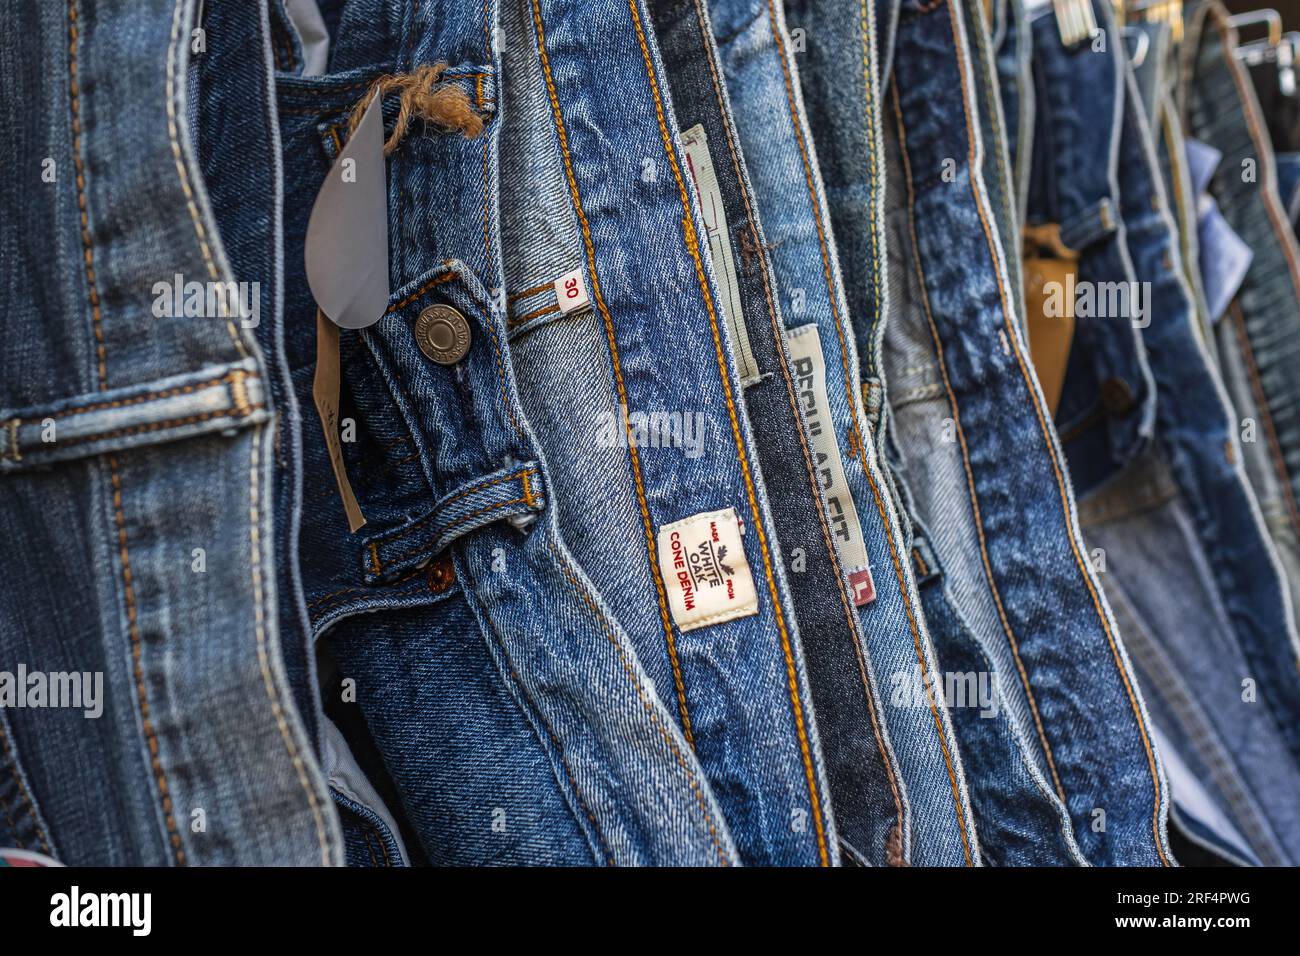 Viele Jeans hängen an einem Ständer. Jeans hängen im Laden. Jeans oder Jeans, die in einem Bekleidungsgeschäft an einem Kleiderbügel hängen. Konzept des Einkaufs, Verkaufs Stockfoto